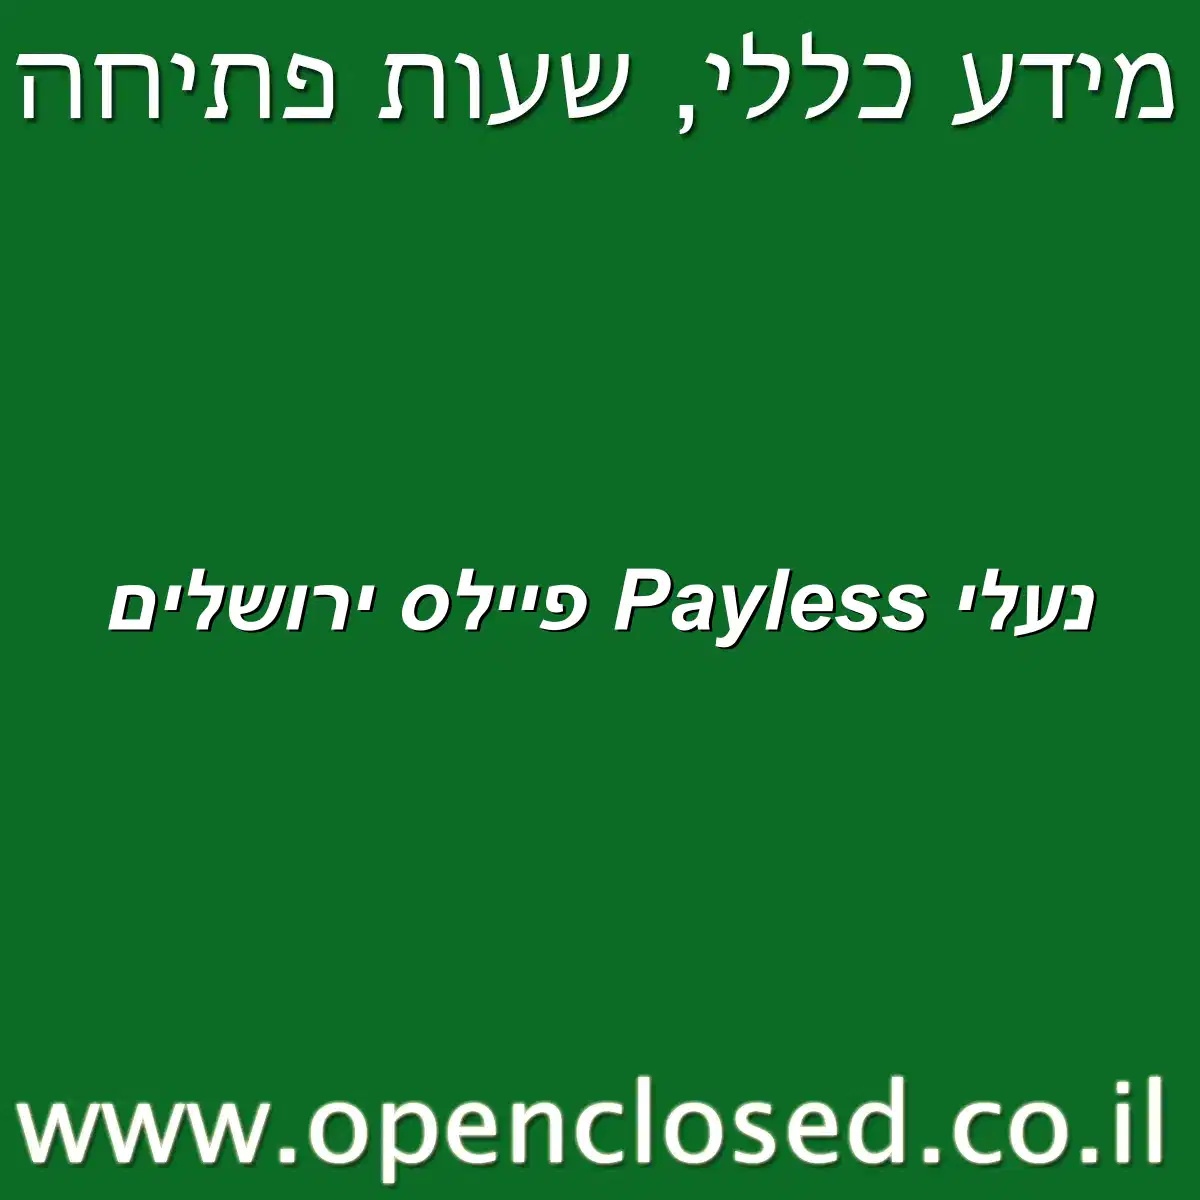 נעלי Payless פיילס ירושלים